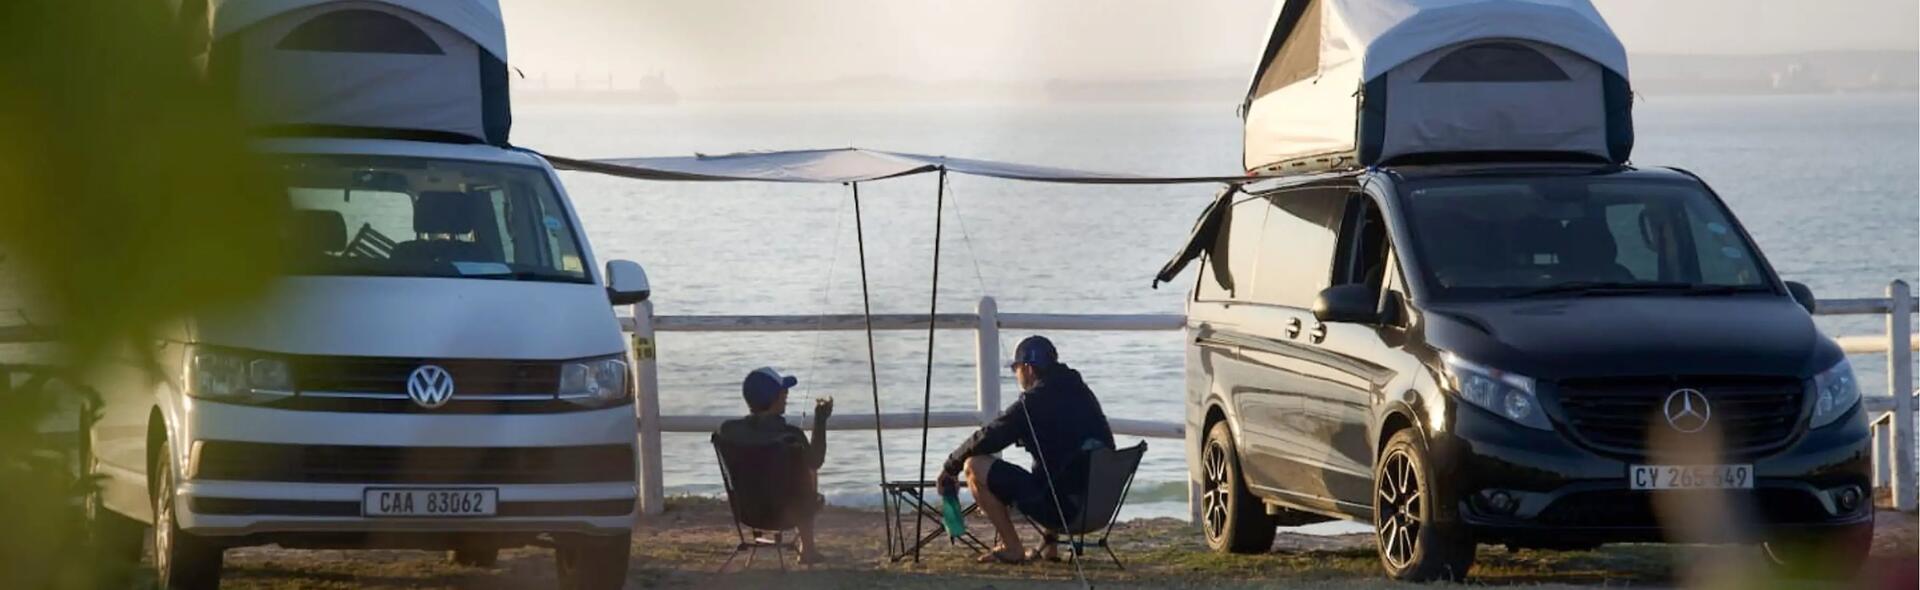 mężczyźni siedzący na krzesłach turystycznych obok zaparkowanych kamperów